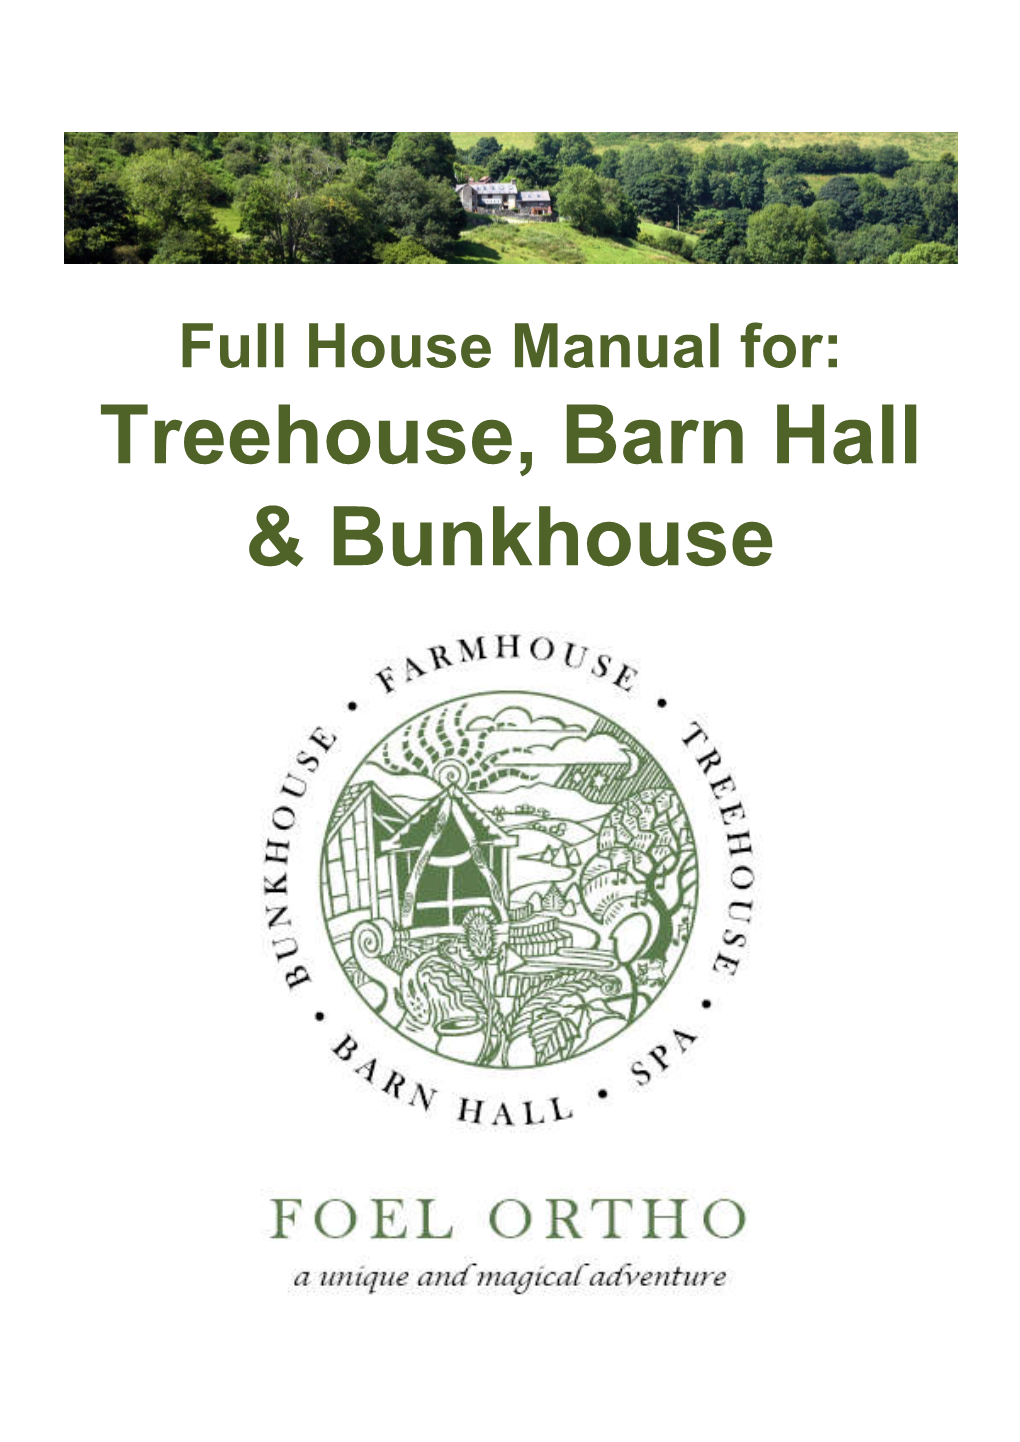 Treehouse, Barn Hall & Bunkhouse